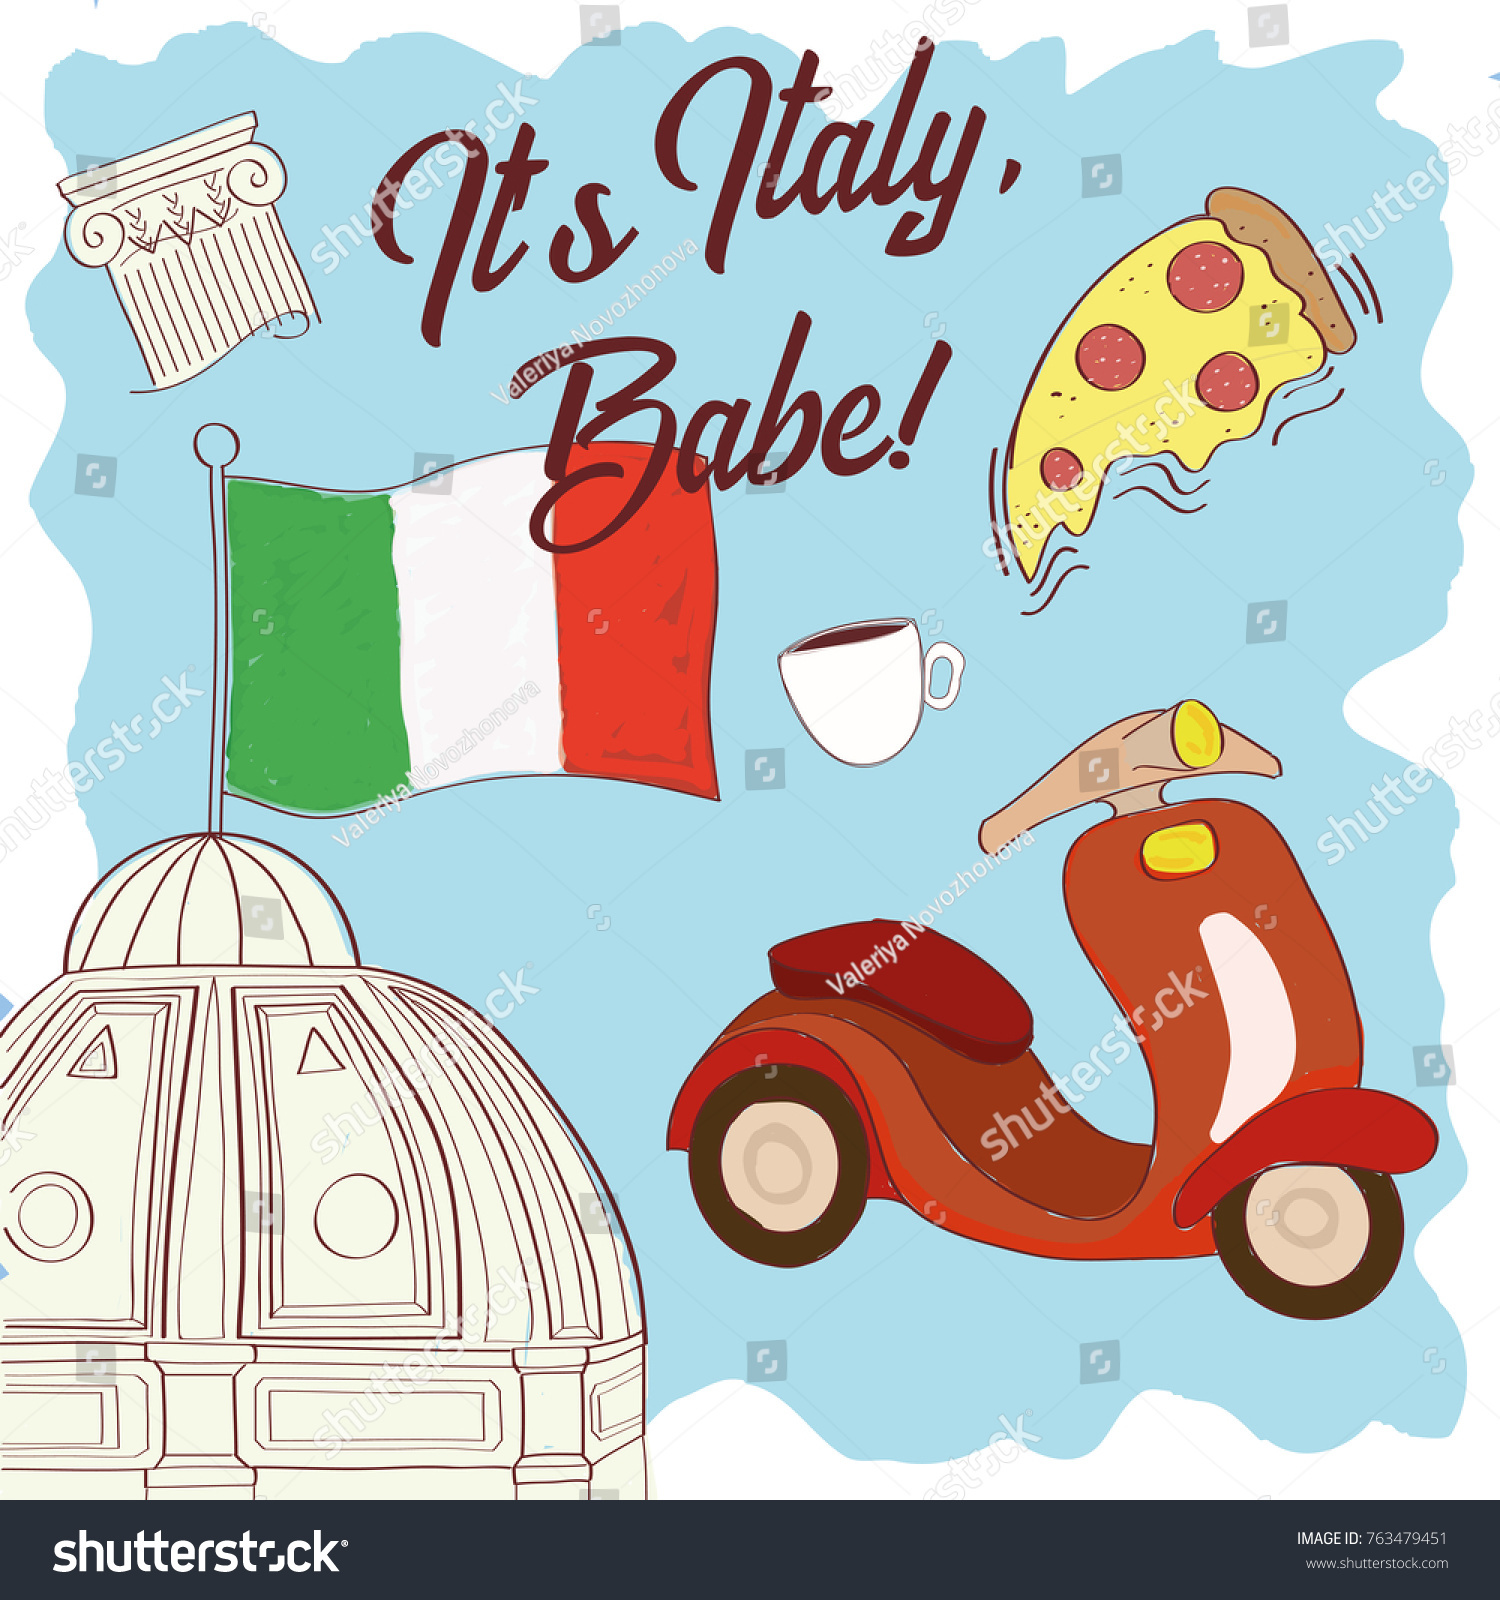 Italian babe in Italian Terms